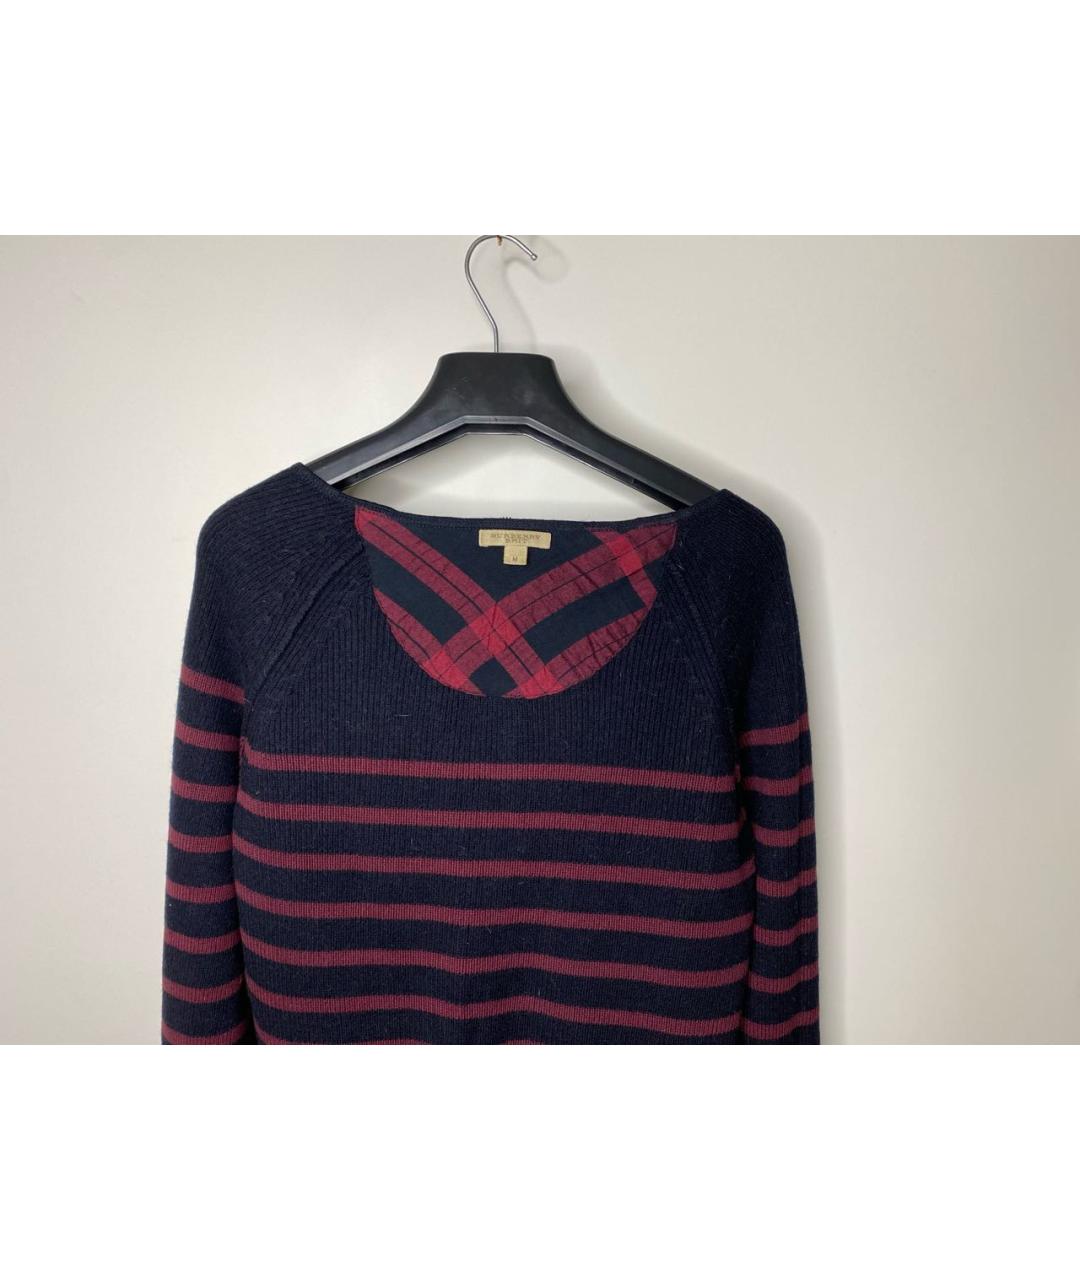 BURBERRY Бордовый шерстяной джемпер / свитер, фото 3